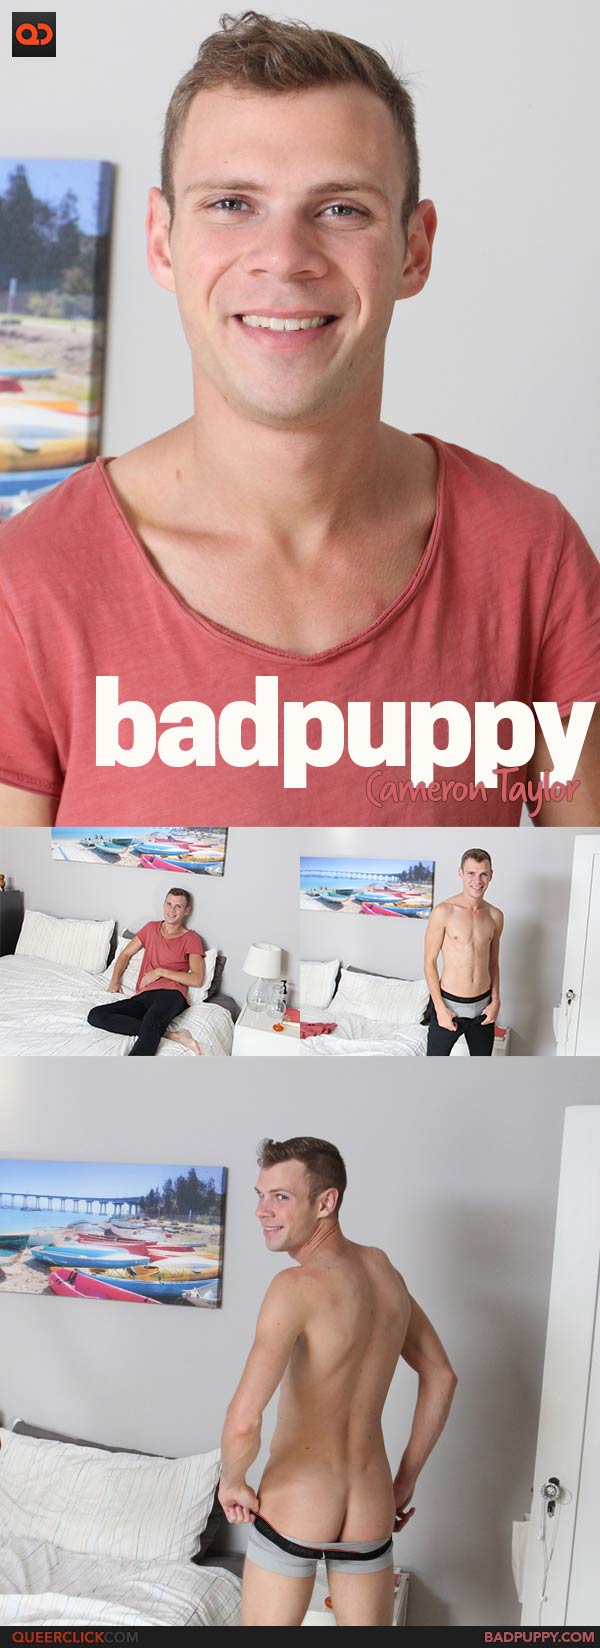 BadPuppy: Cameron Taylor